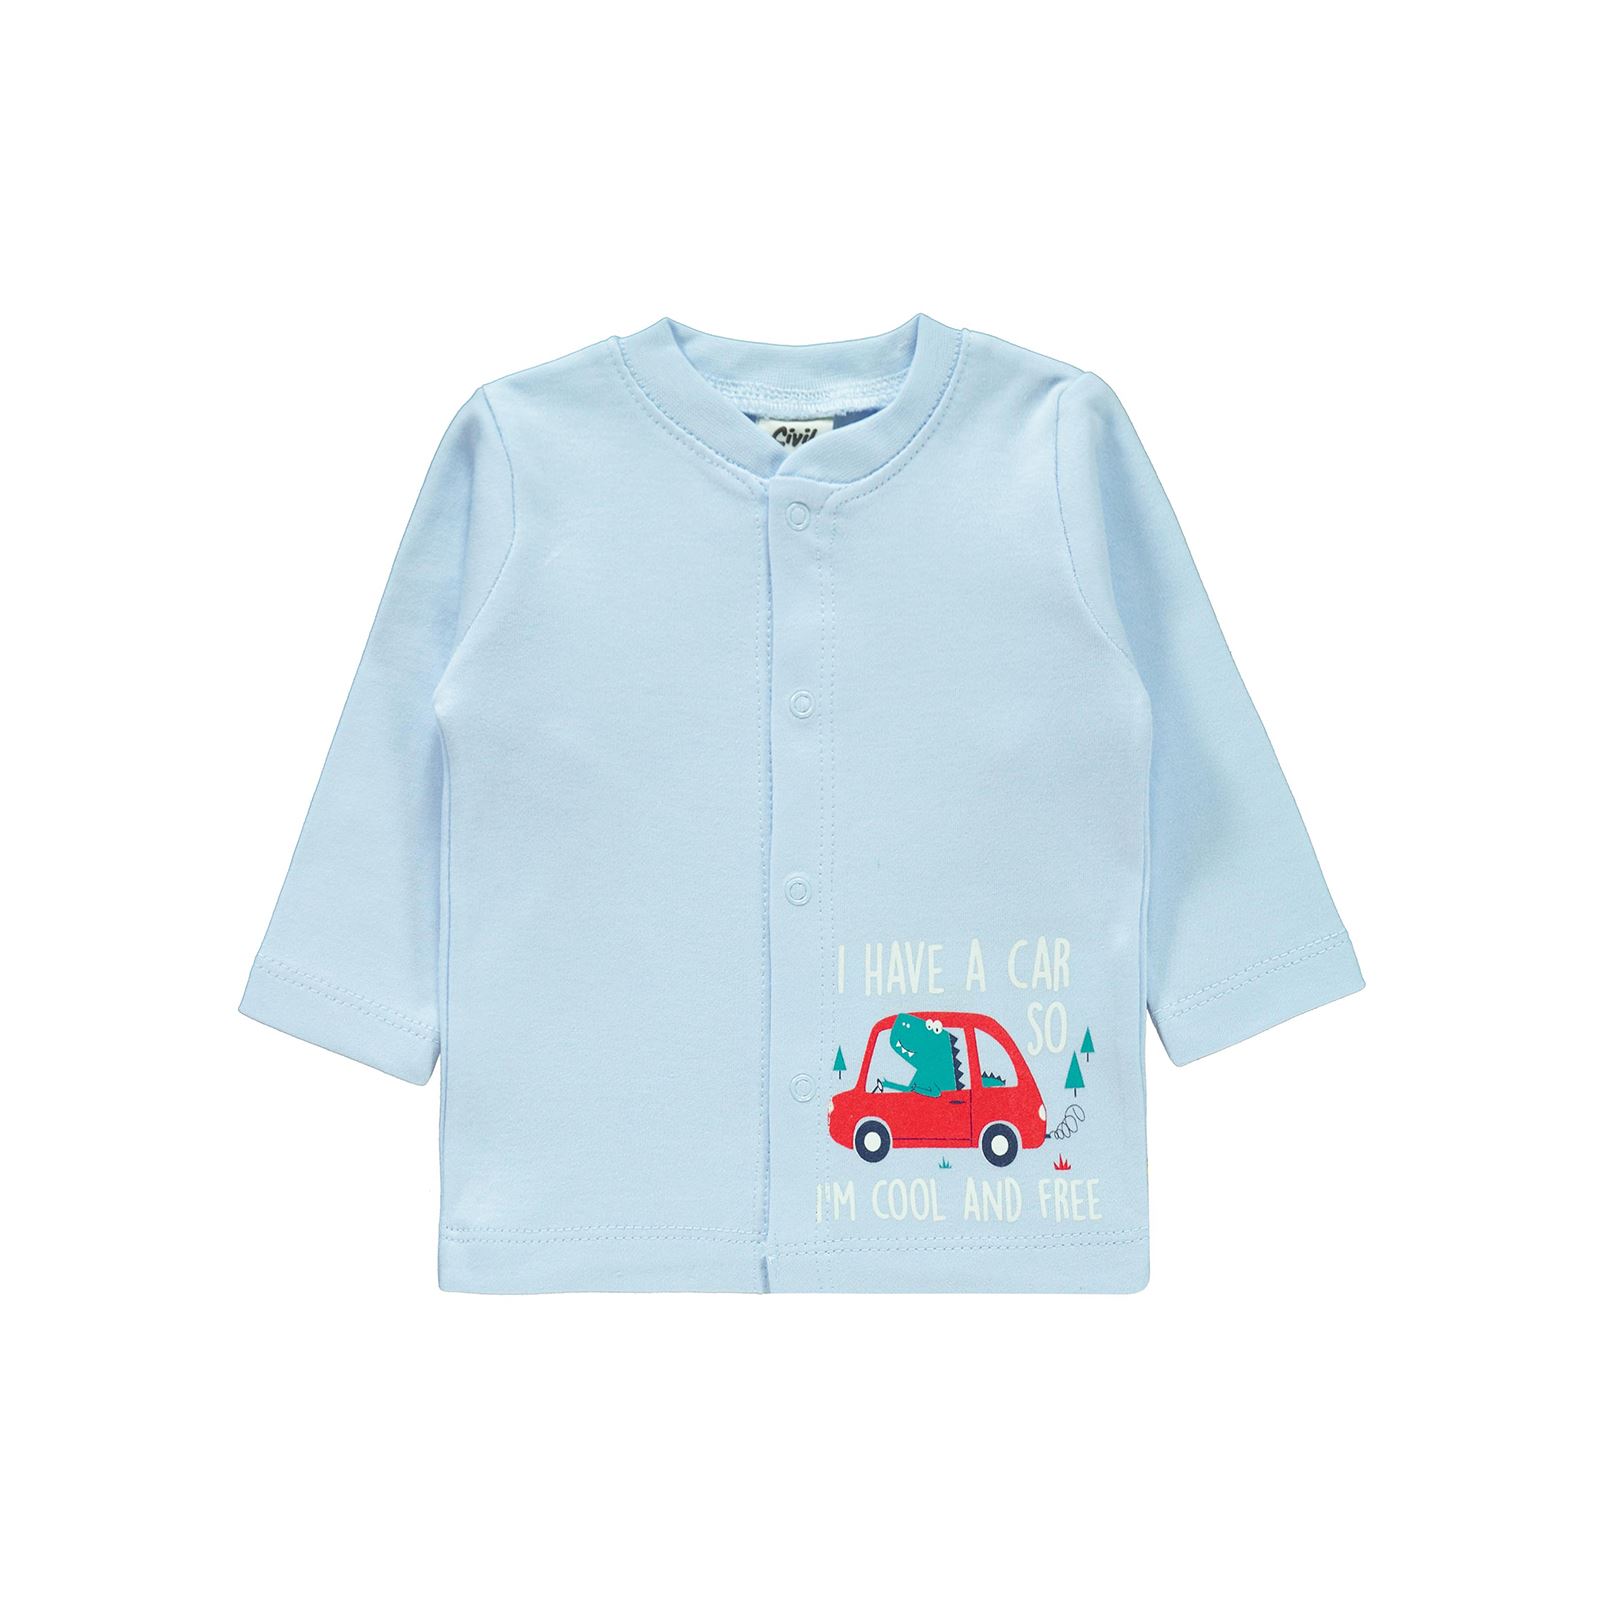 Civil Baby Erkek Bebek Pijama Takımı 1-6 Ay Mavi